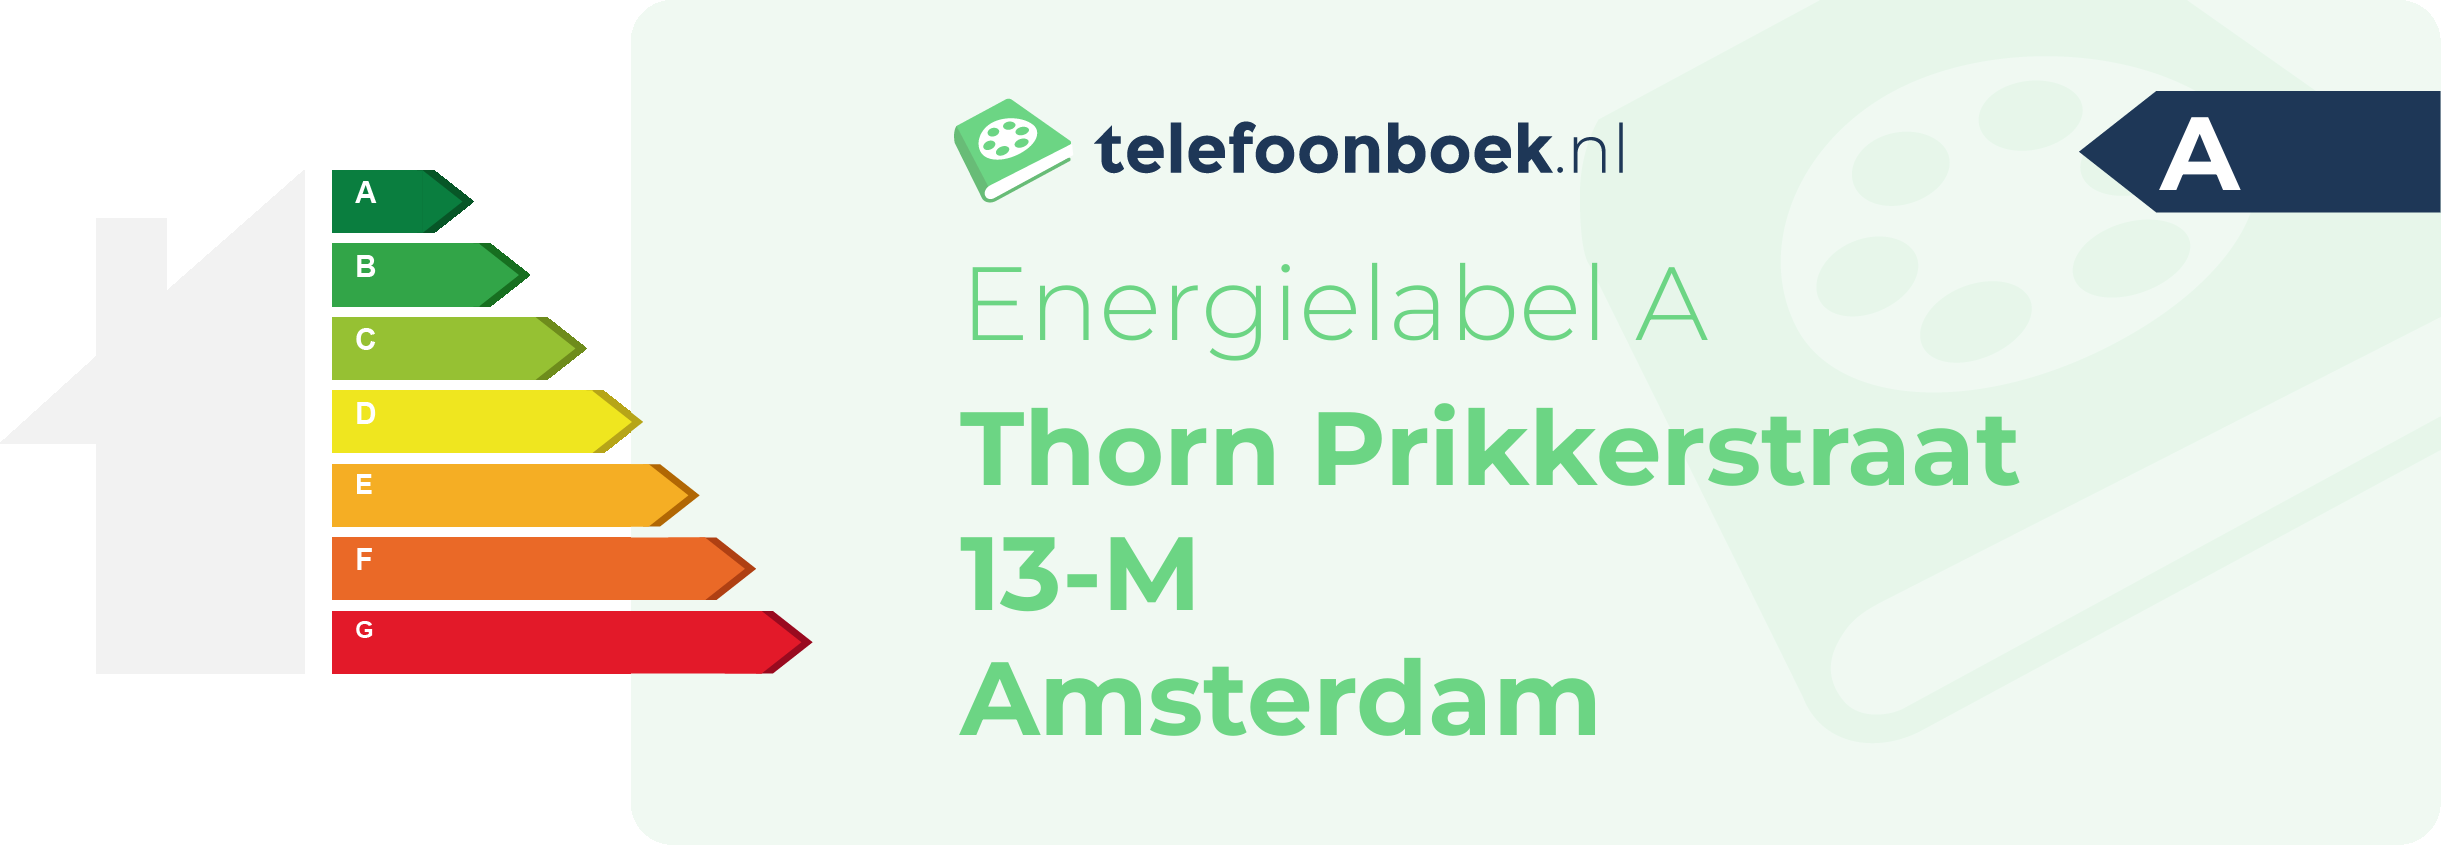 Energielabel Thorn Prikkerstraat 13-M Amsterdam